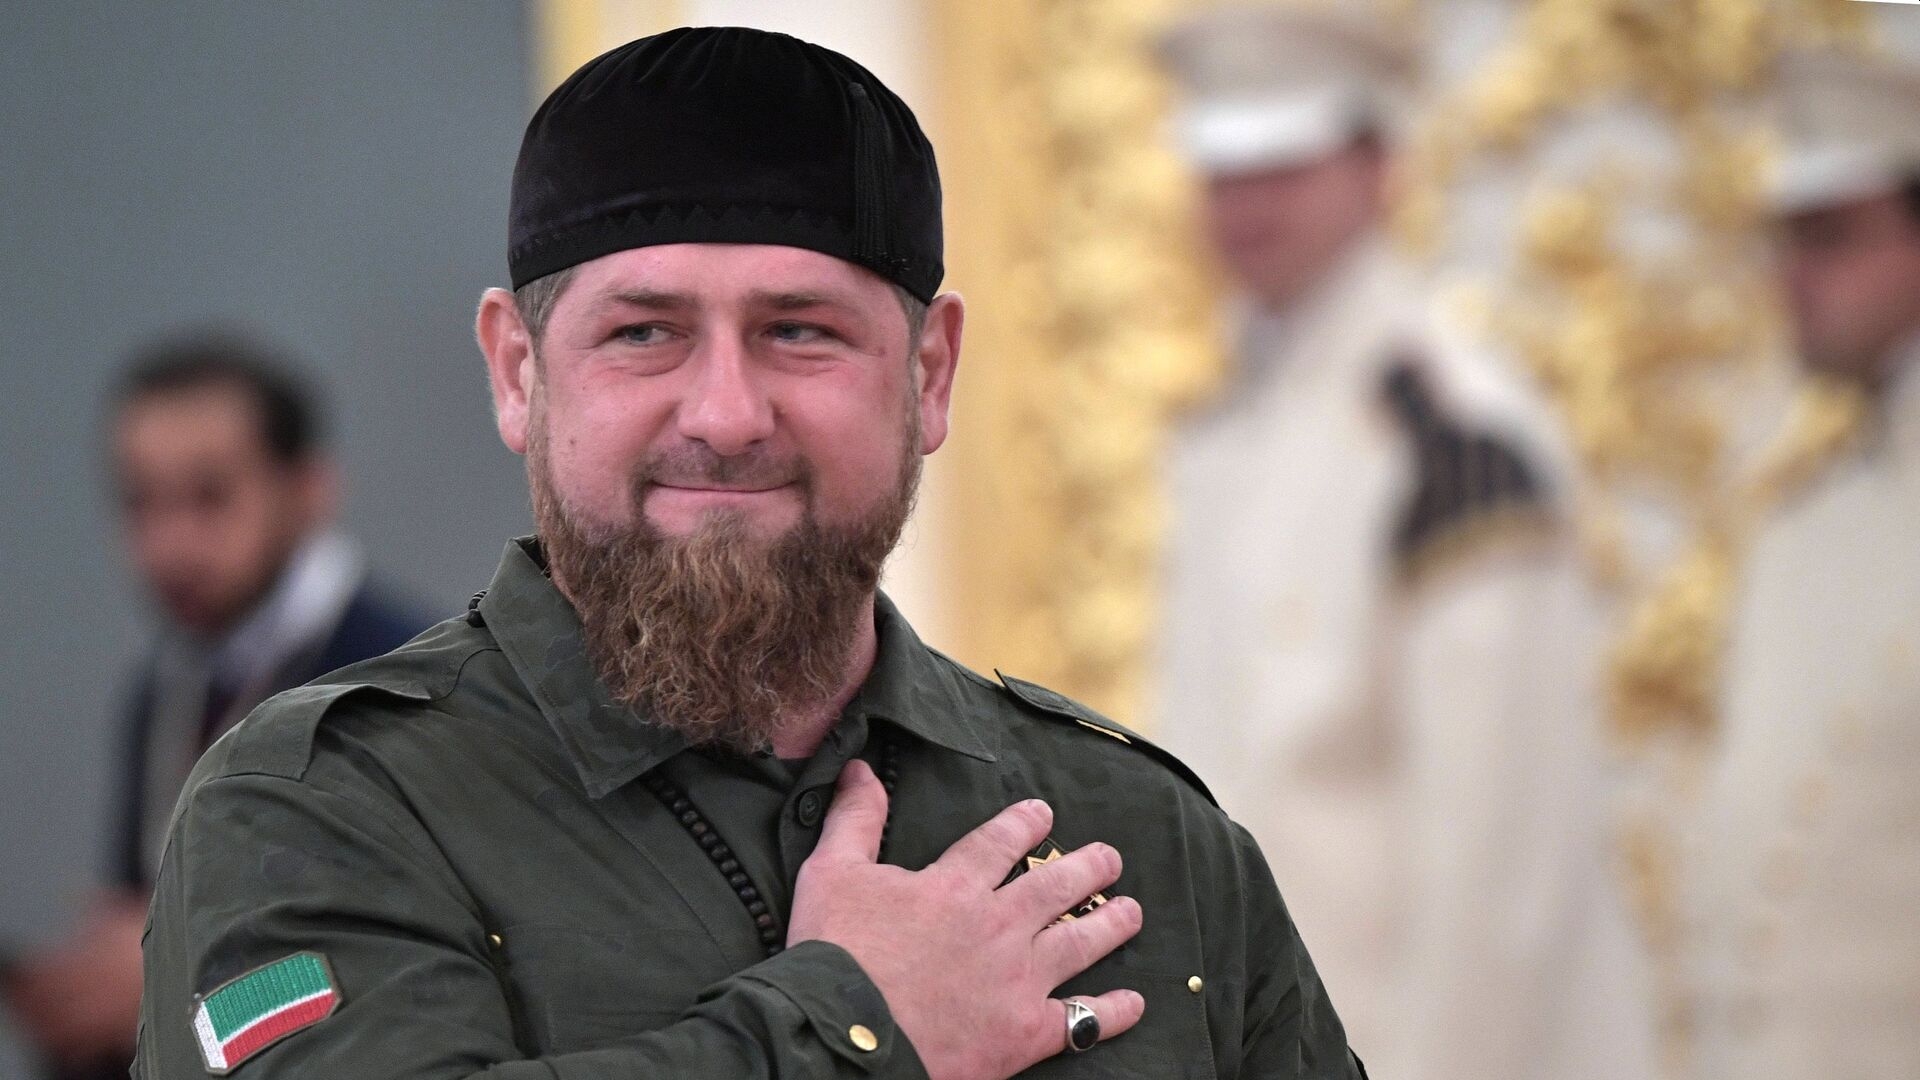 В Чечне показали тренировку Кадырова на фоне слухов о его болезни